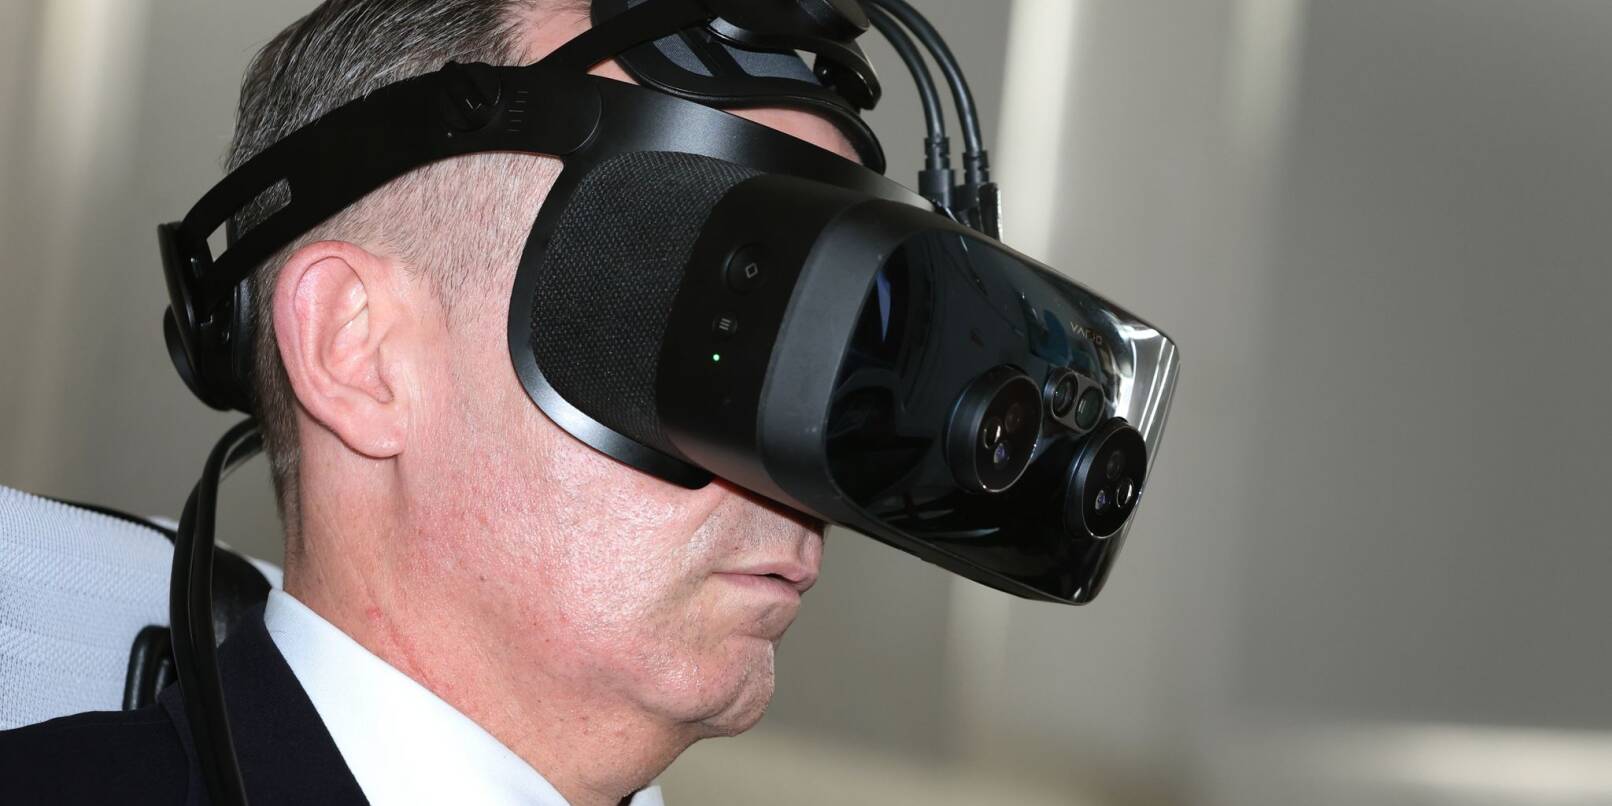 Digitalminister Volker Wissing, hier während eines Besuchs beim Luftfahrzeuge-Hersteller Lilium, mit einer MR-Brille (Mixed Reality) in einem Flugsimulator.